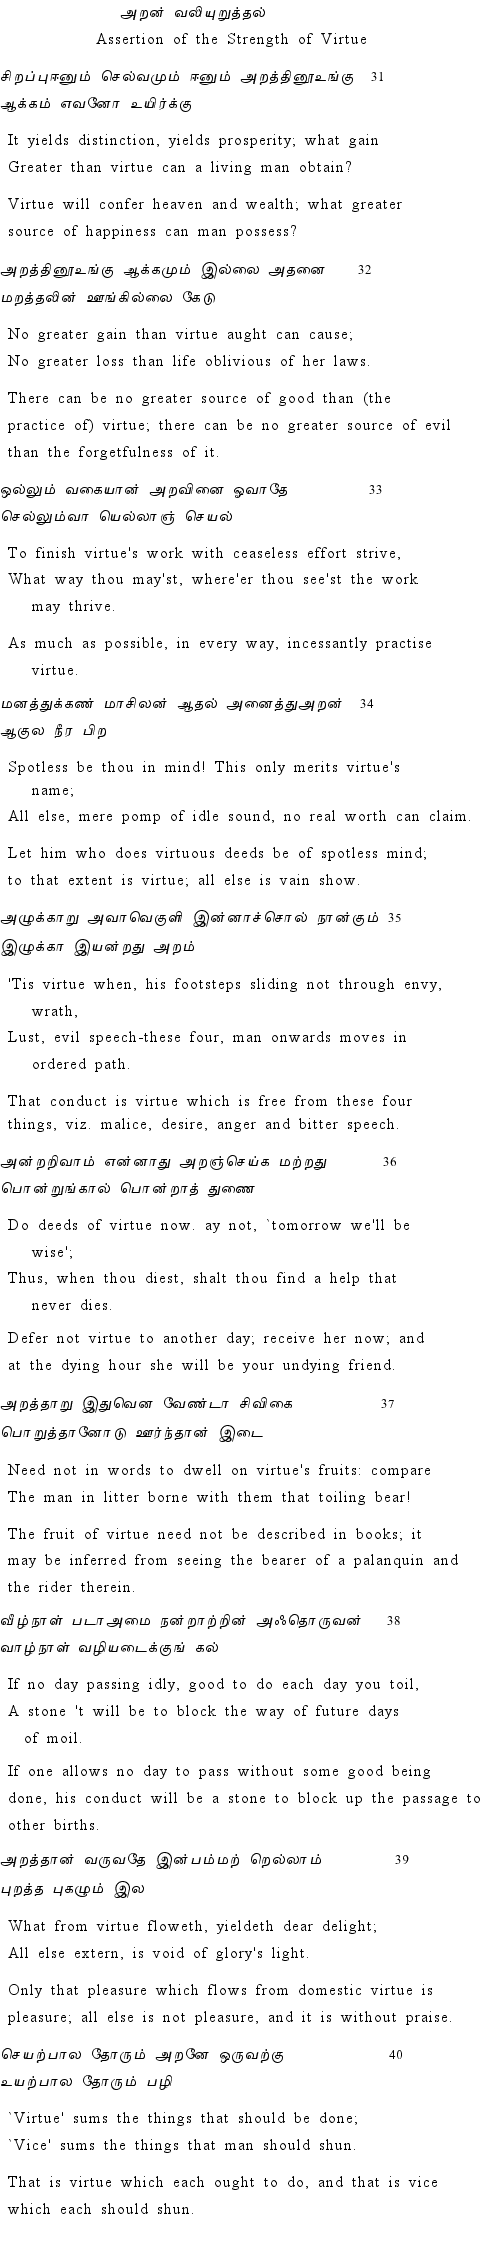 Text of Adhikaram 4